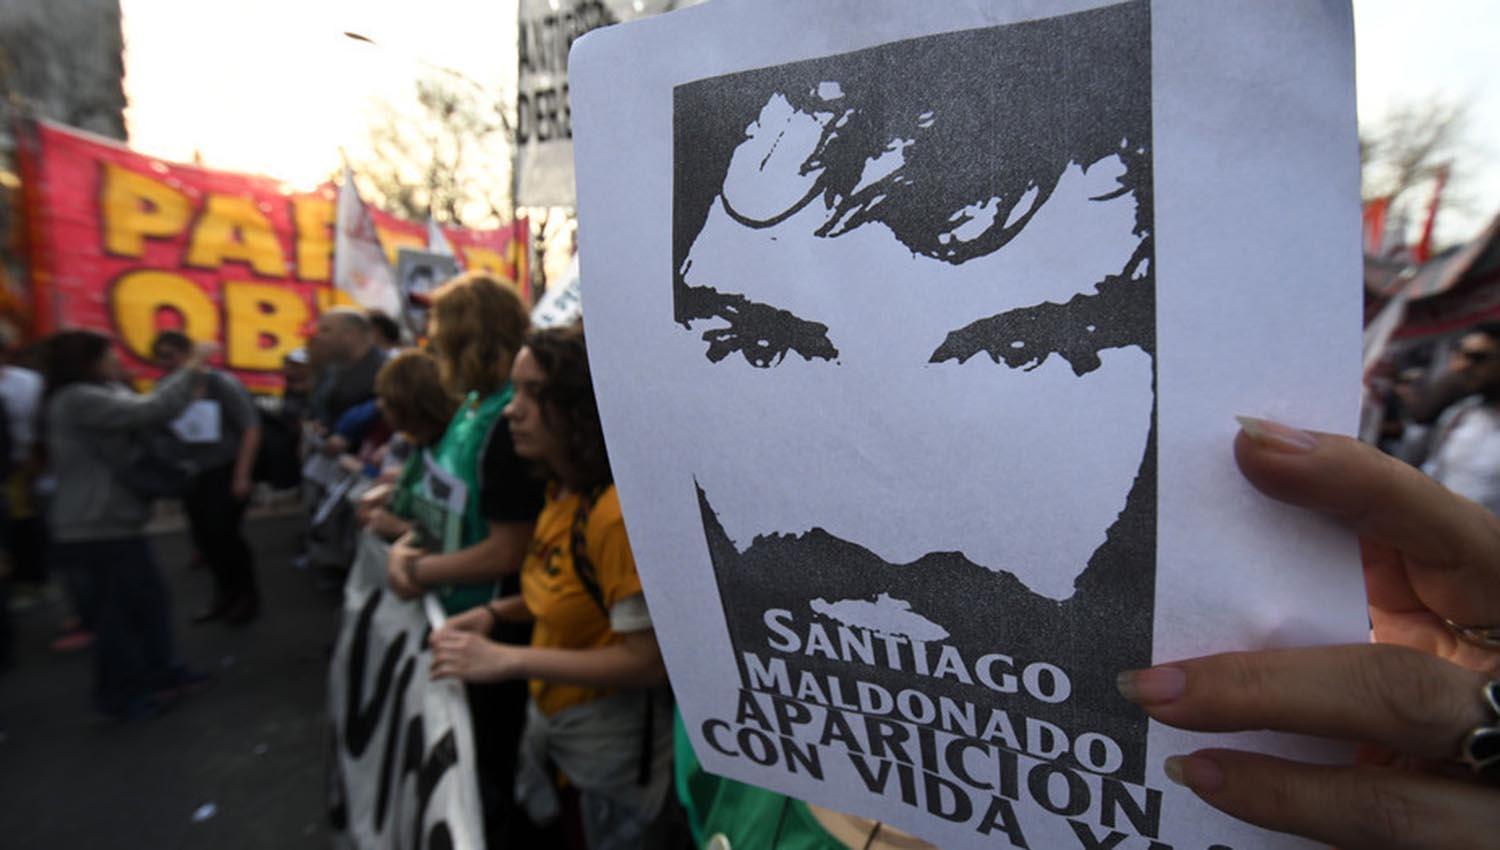 Caso Santiago Maldonado: más enigmas que certezas